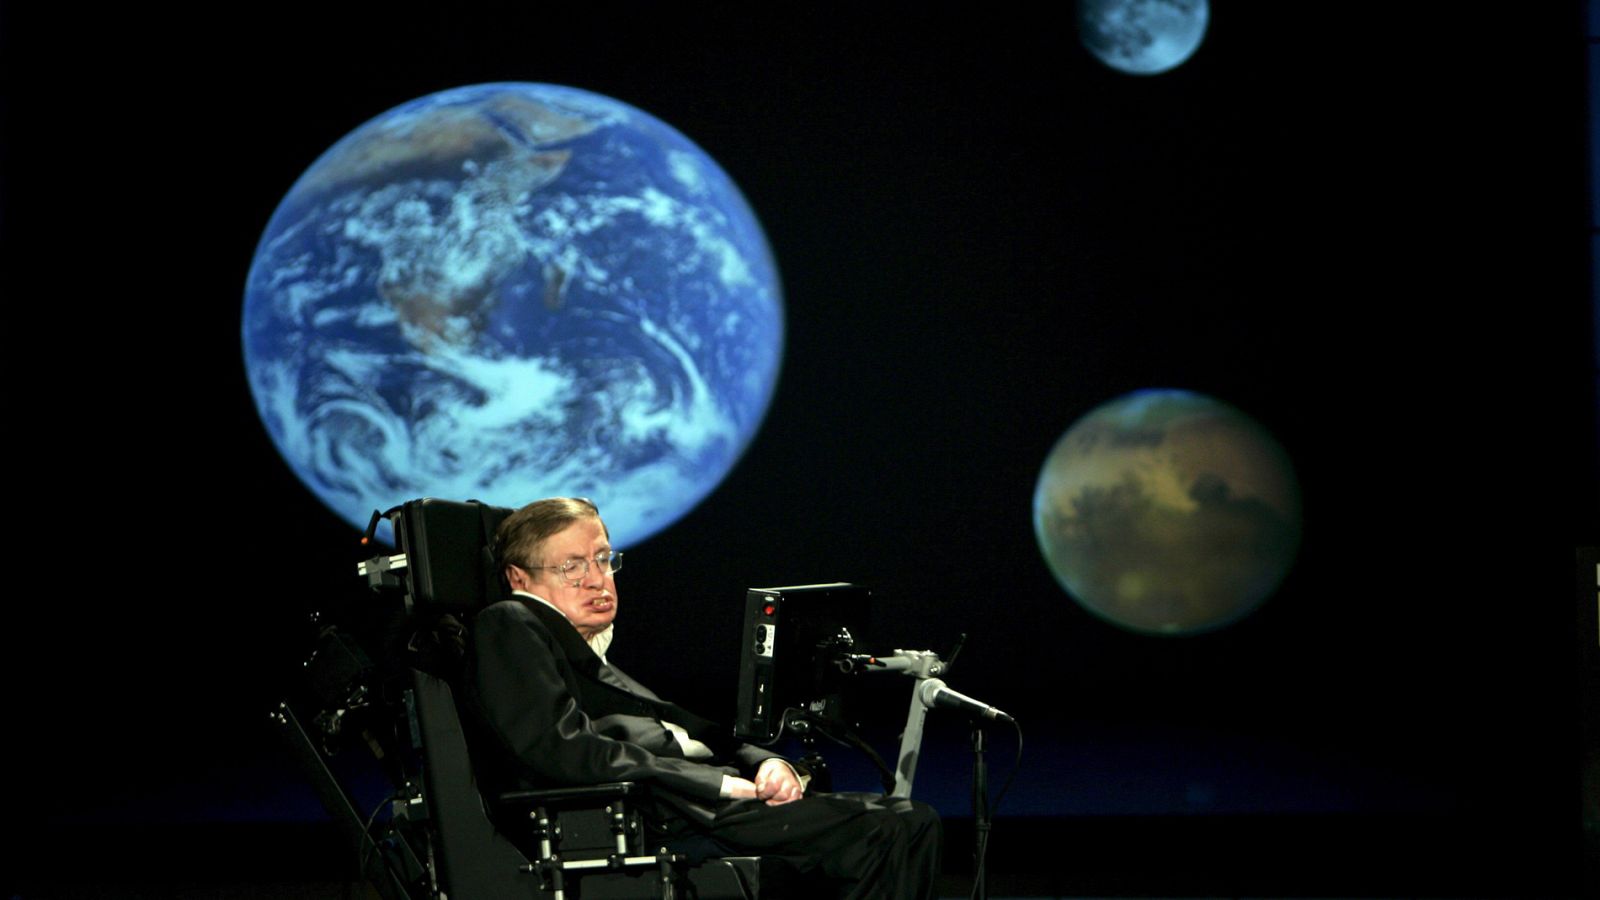 El fsico britnico Stephen Hawking, una de las ms brillantes mentes cientficas del mundo, ha muerto este mircoles a la edad de 76 aos, ha confirmado su familia. Hawking fue un fsico terico, astrofsico, cosmlogo y divulgador, que sufra una d